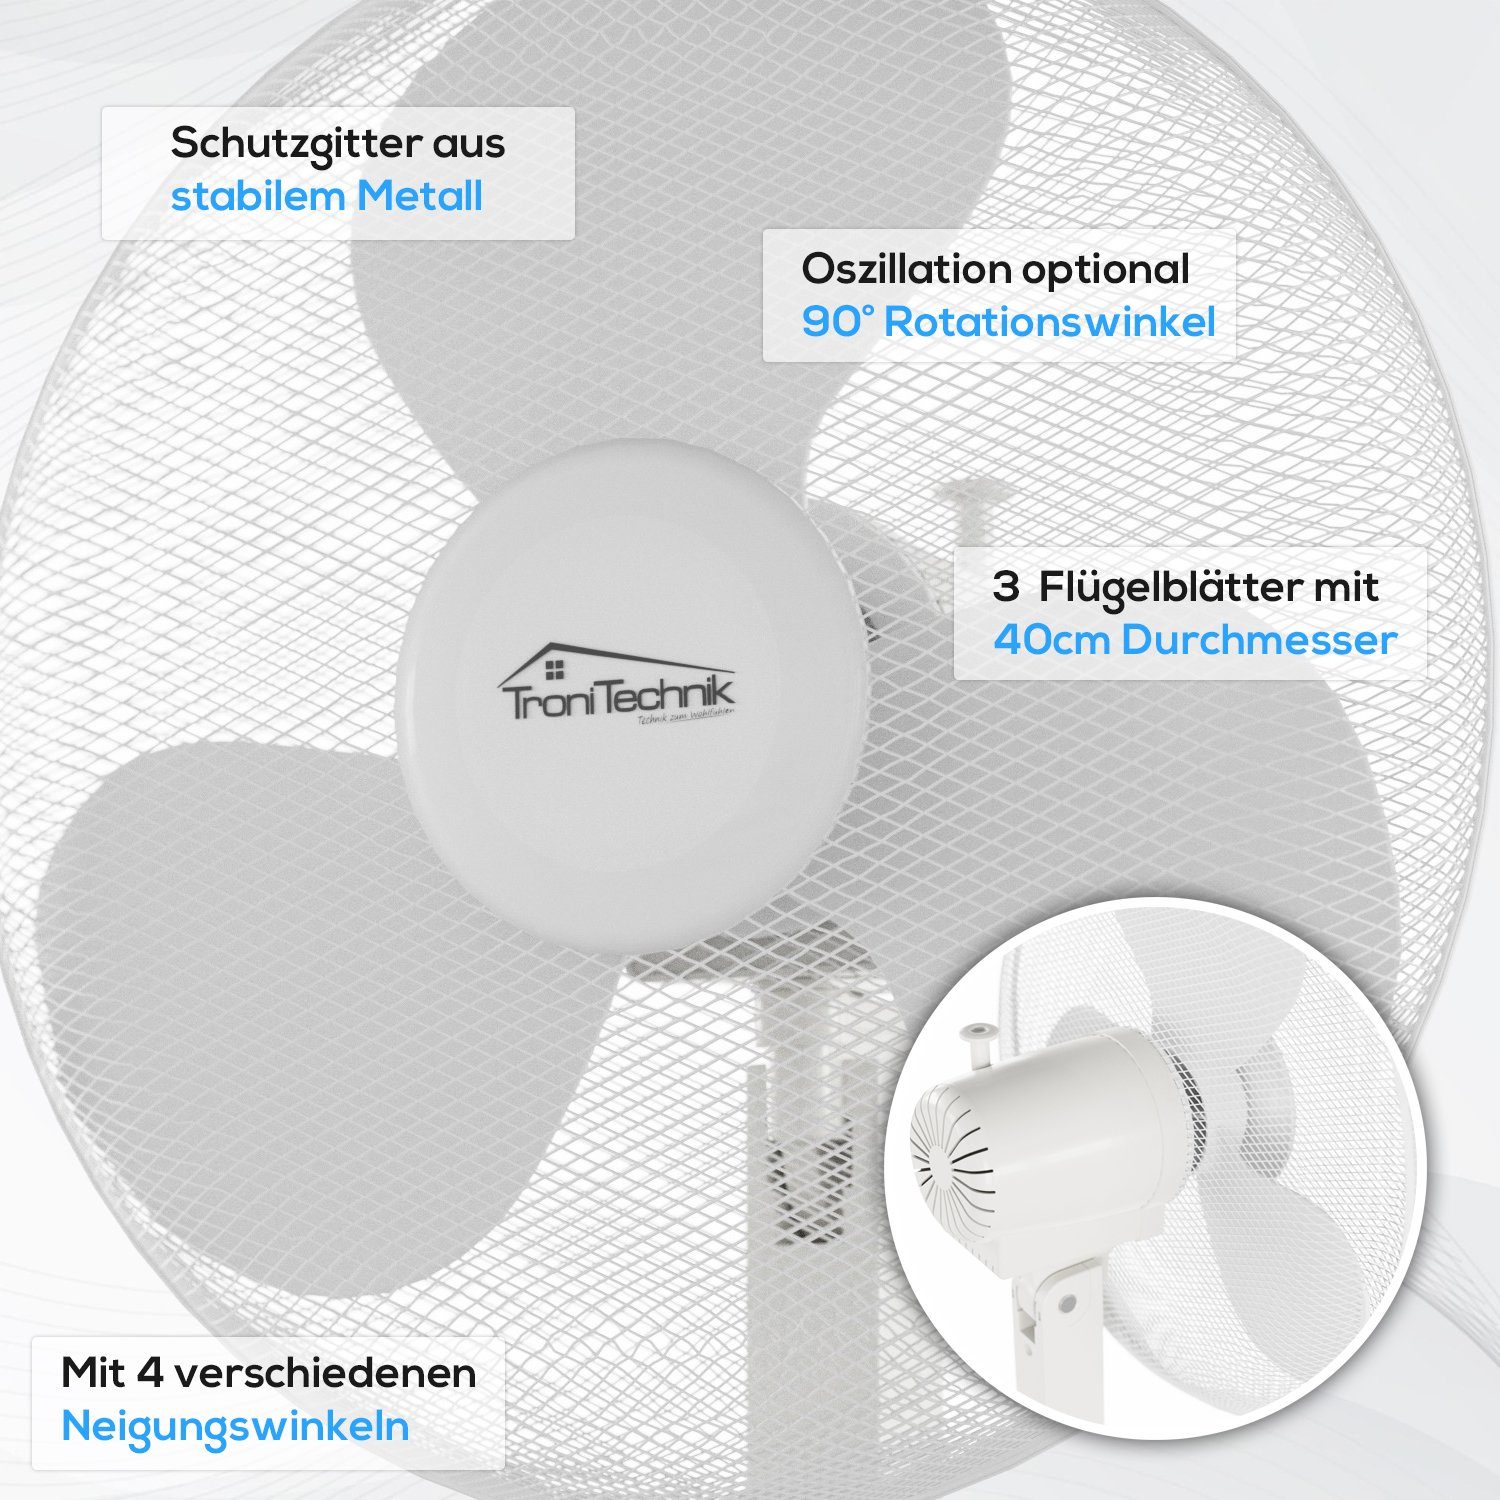 SV02 Oszillation, TroniTechnik ⌀ Intensitätsstufen, mit 40cm Oszillation,3 Standventilator Kühlgerät weiß Durchmesser, Lüfter, 40cm verschiedene 45Watt